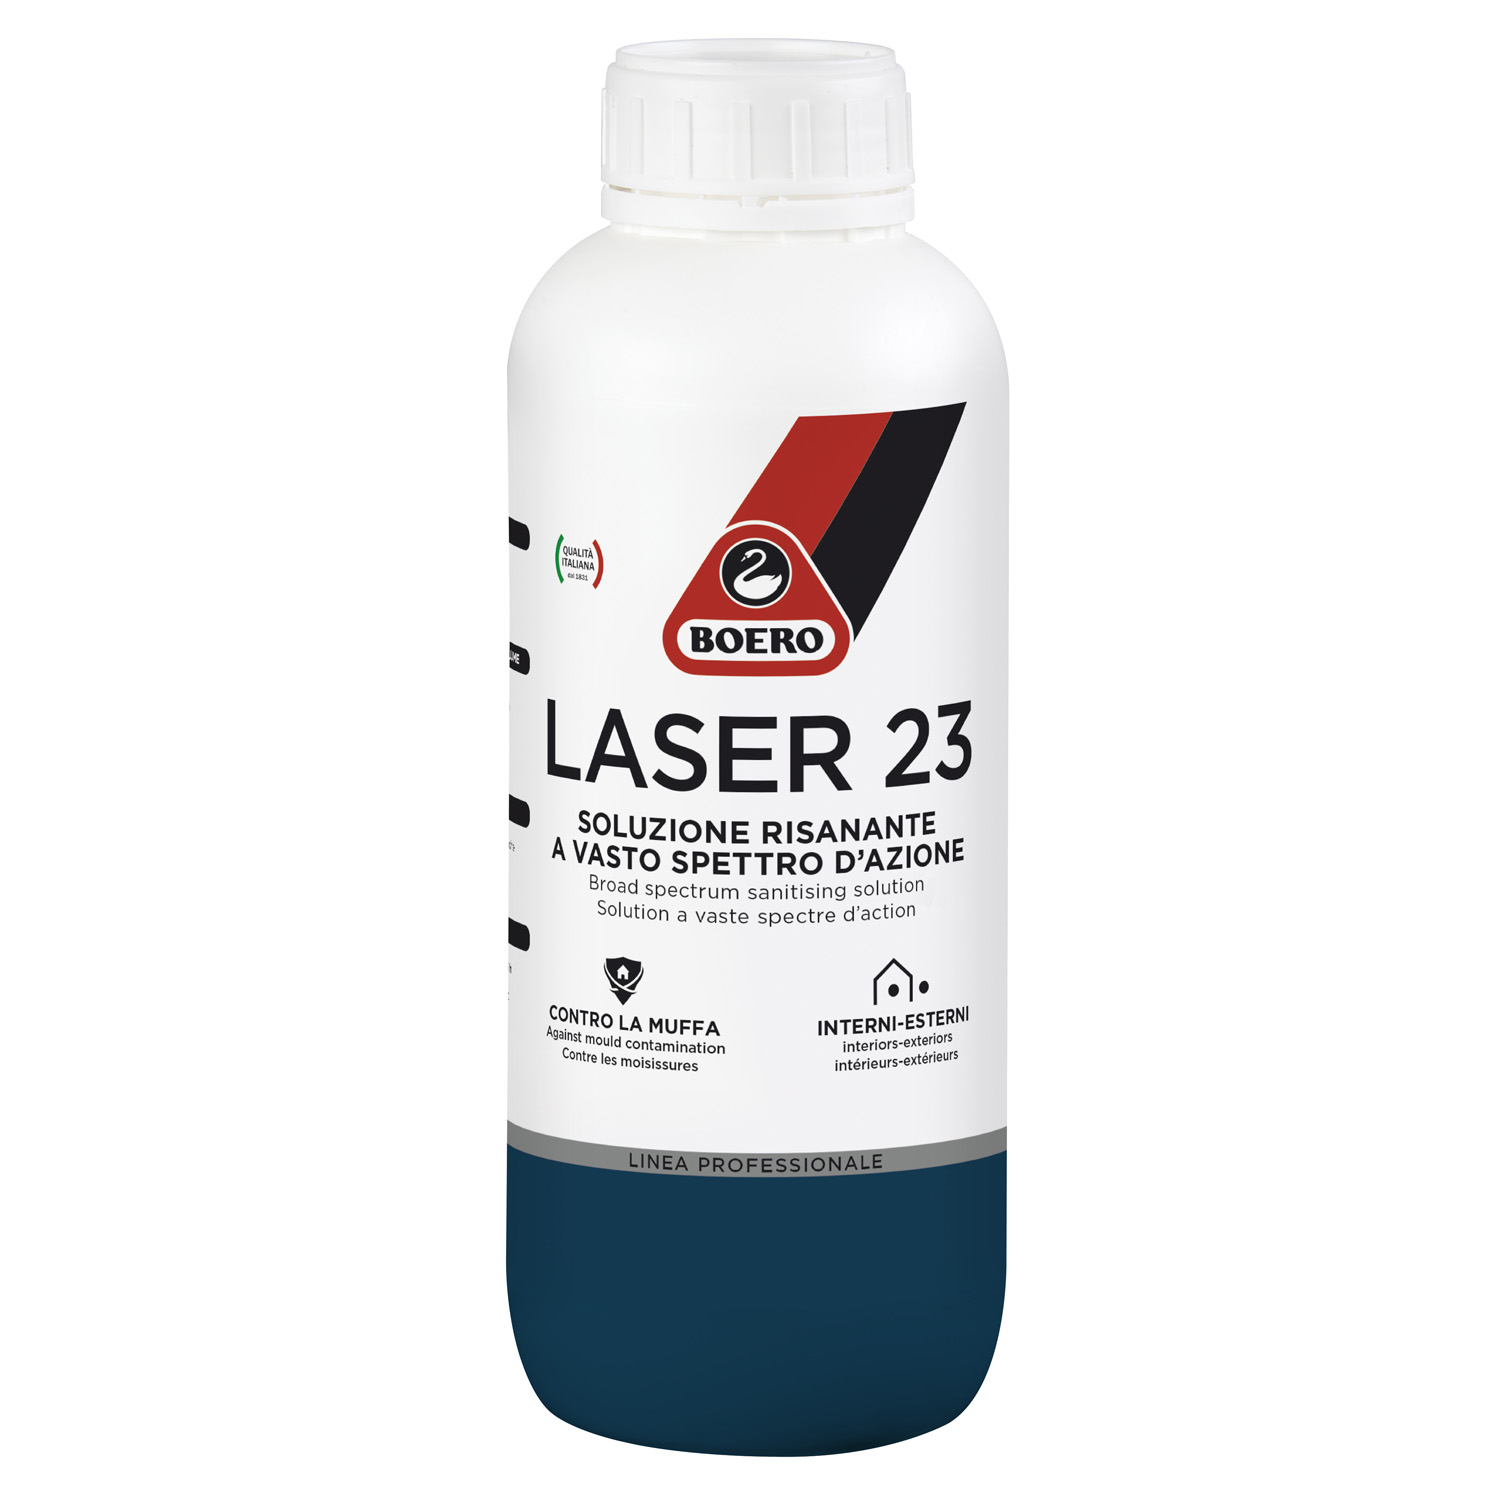 Soluzione risanante antimuffa Laser 23 di Boero, pronta all'uso